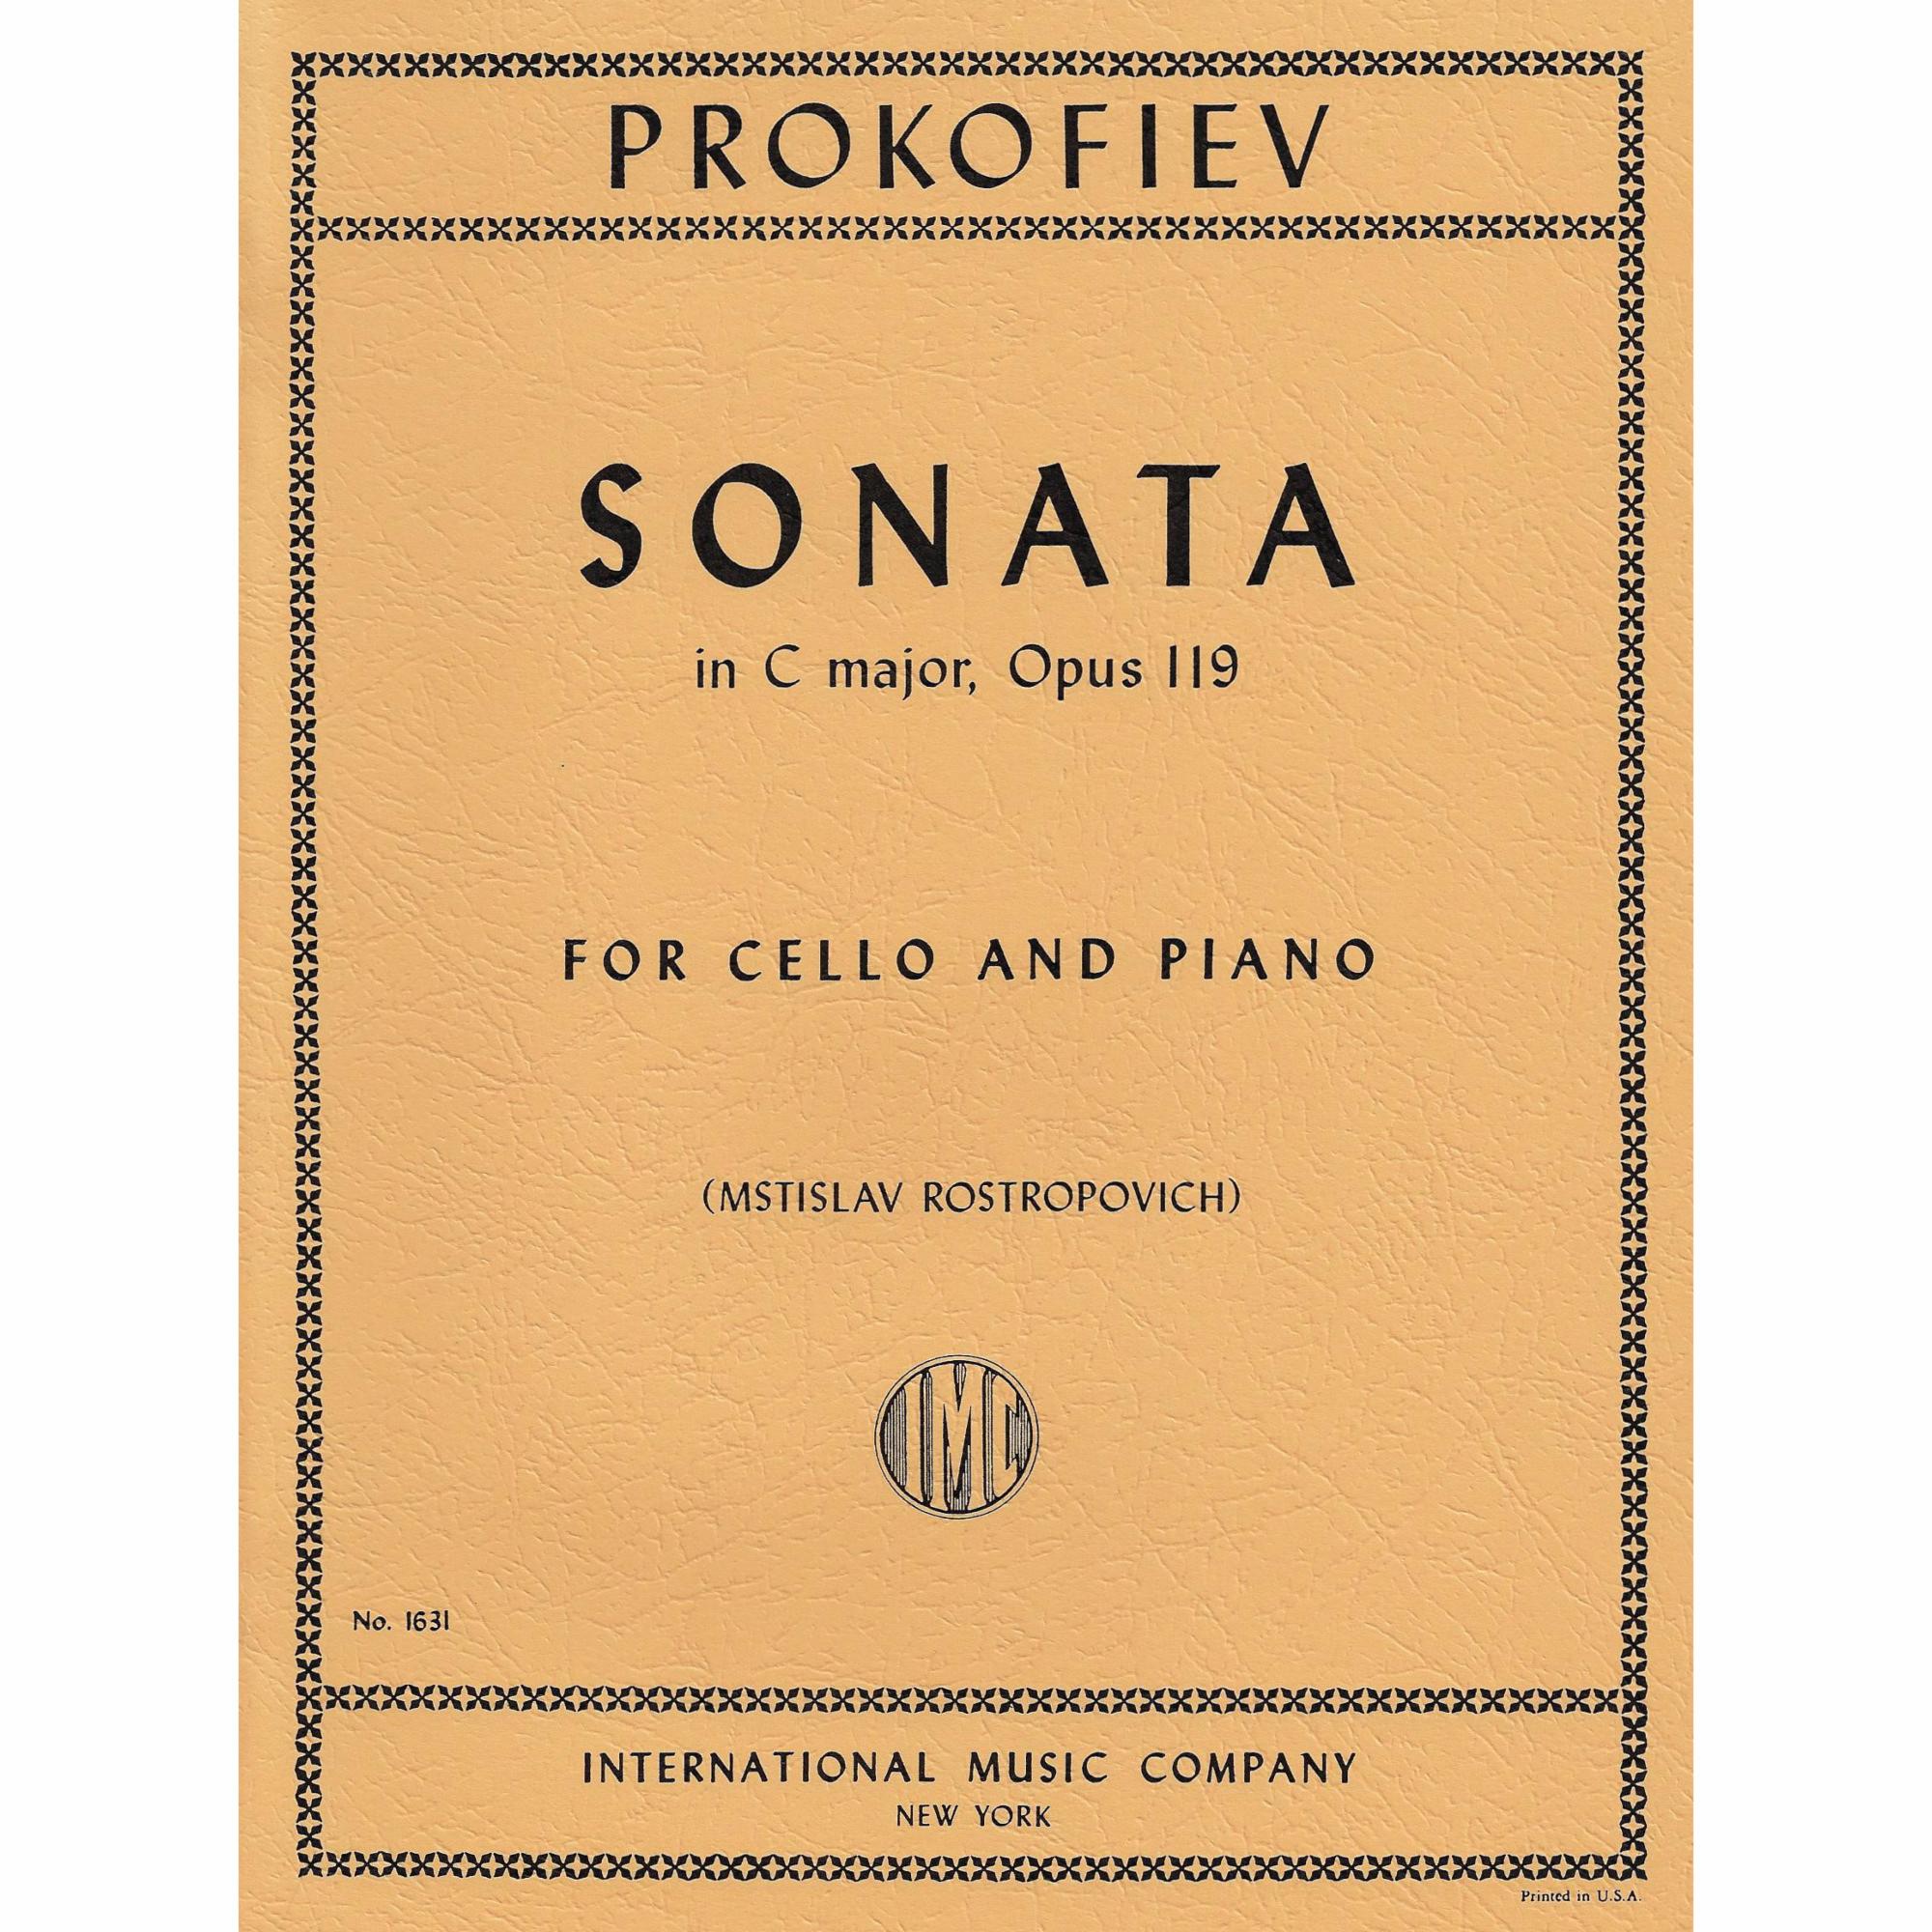 Prokofiev -- Sonata in C Major, Op. 119 for Cello and Piano